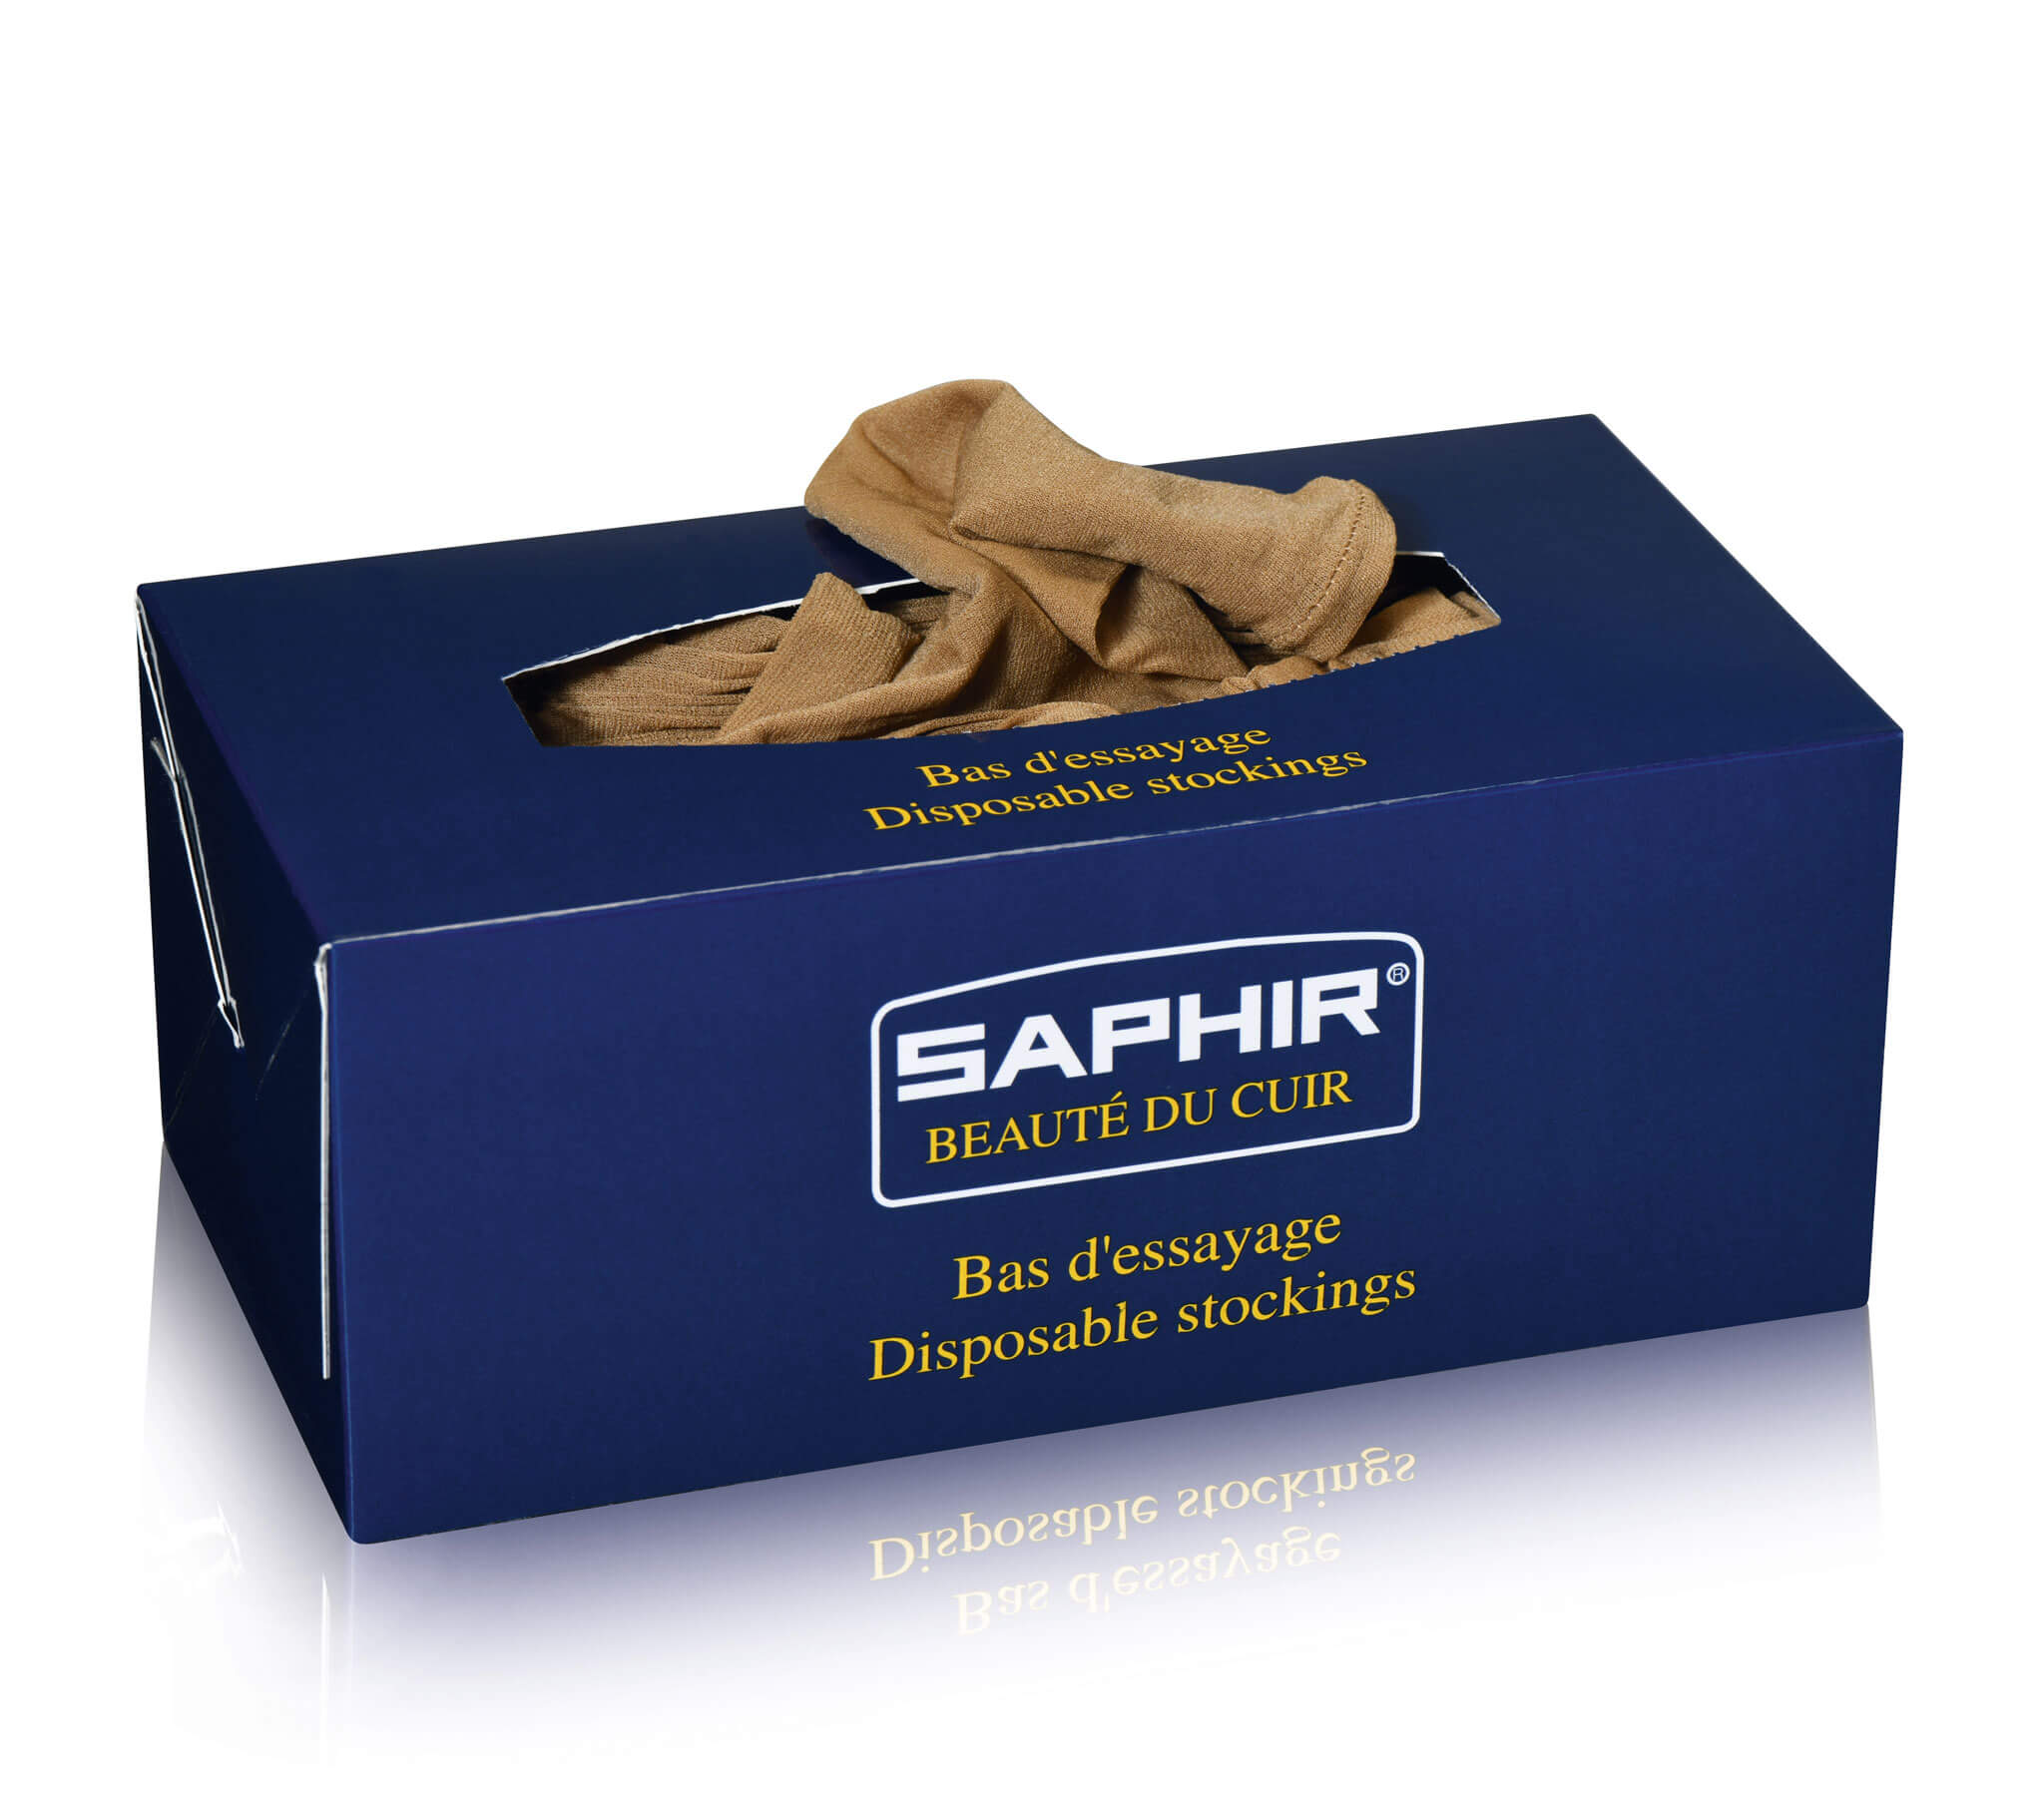 Saphir Beaute du Cuir - Try on socks